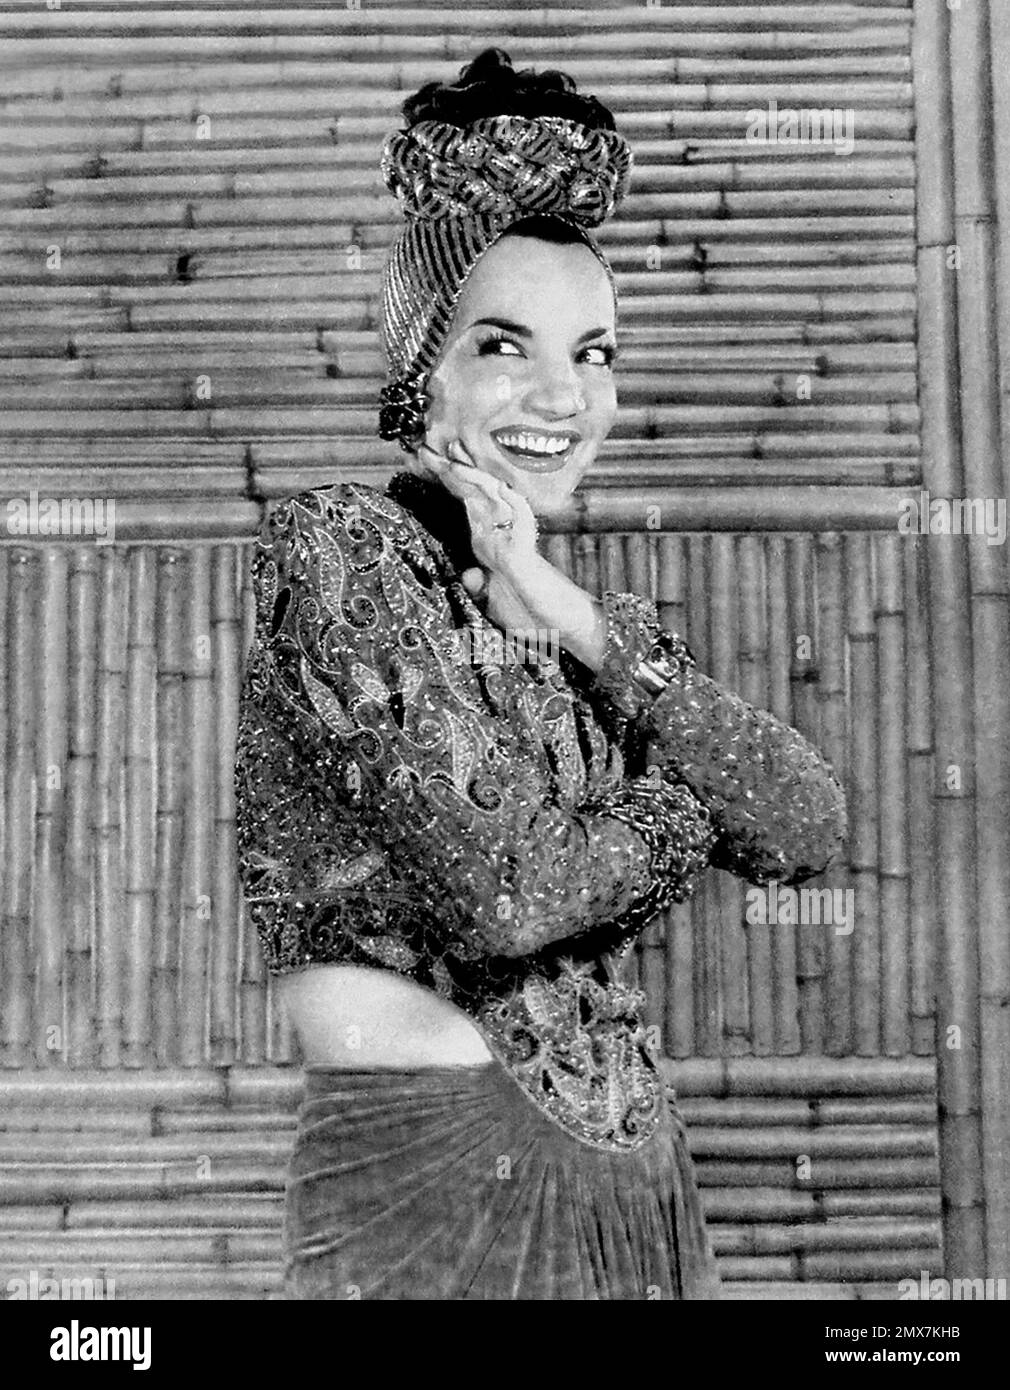 Carmen Miranda. Portrait de la chanteuse brésilienne de samba et actrice Maria do Carmo Miranda da Cunha (1909-1955), New York Sunday News, 1941 Banque D'Images